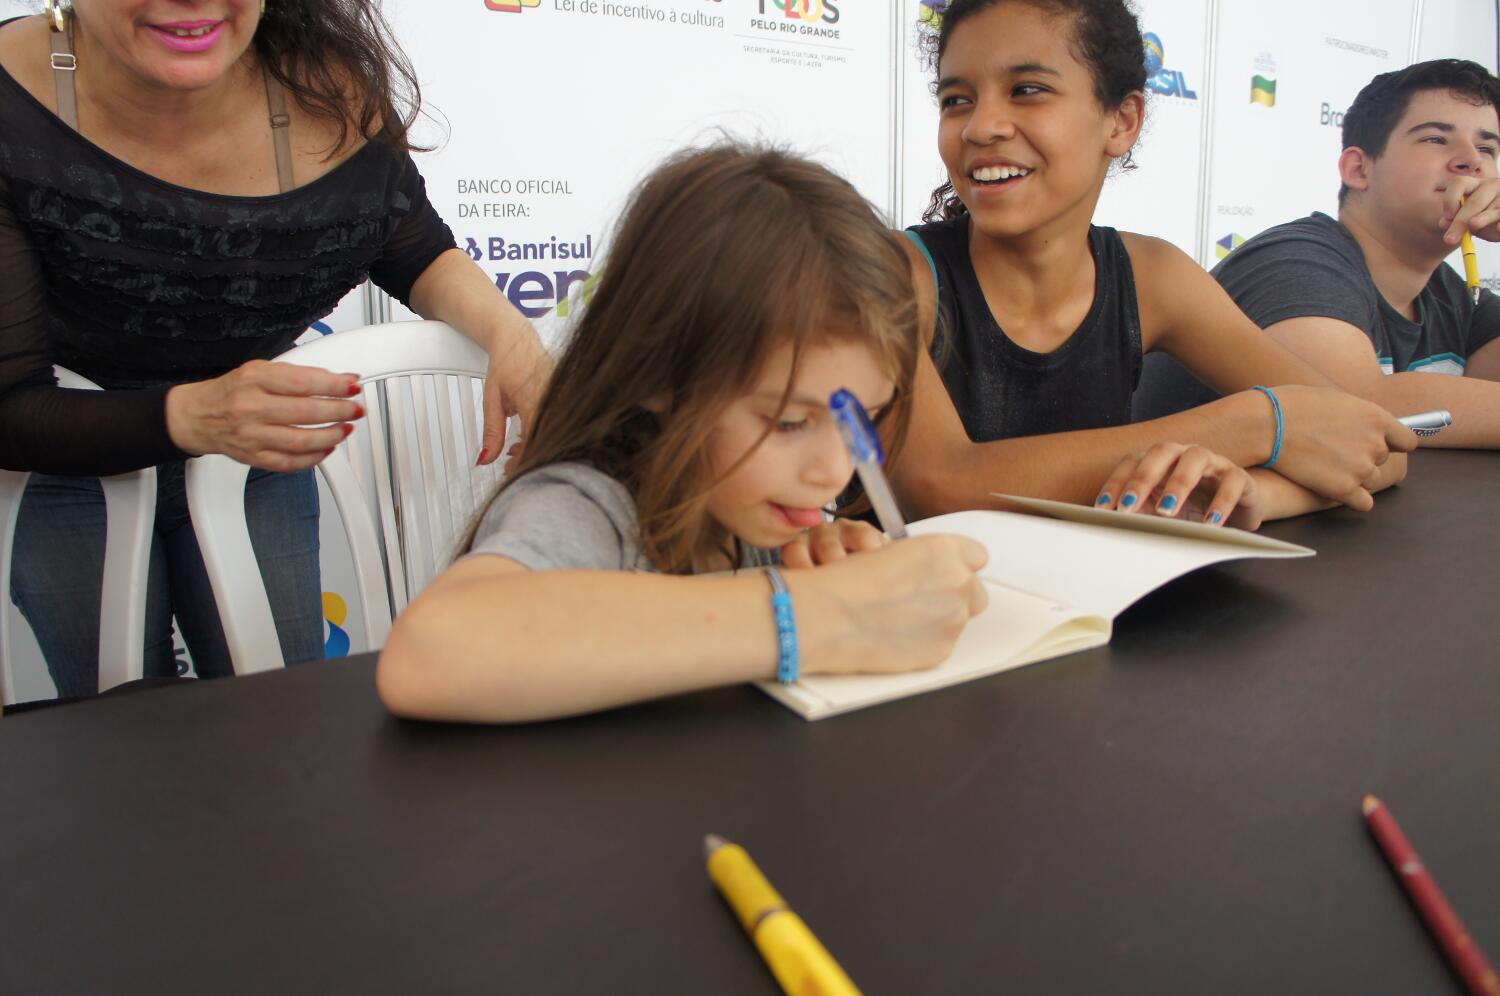 Boquinha lança livro e jogo na Feira do Livro de Porto Alegre